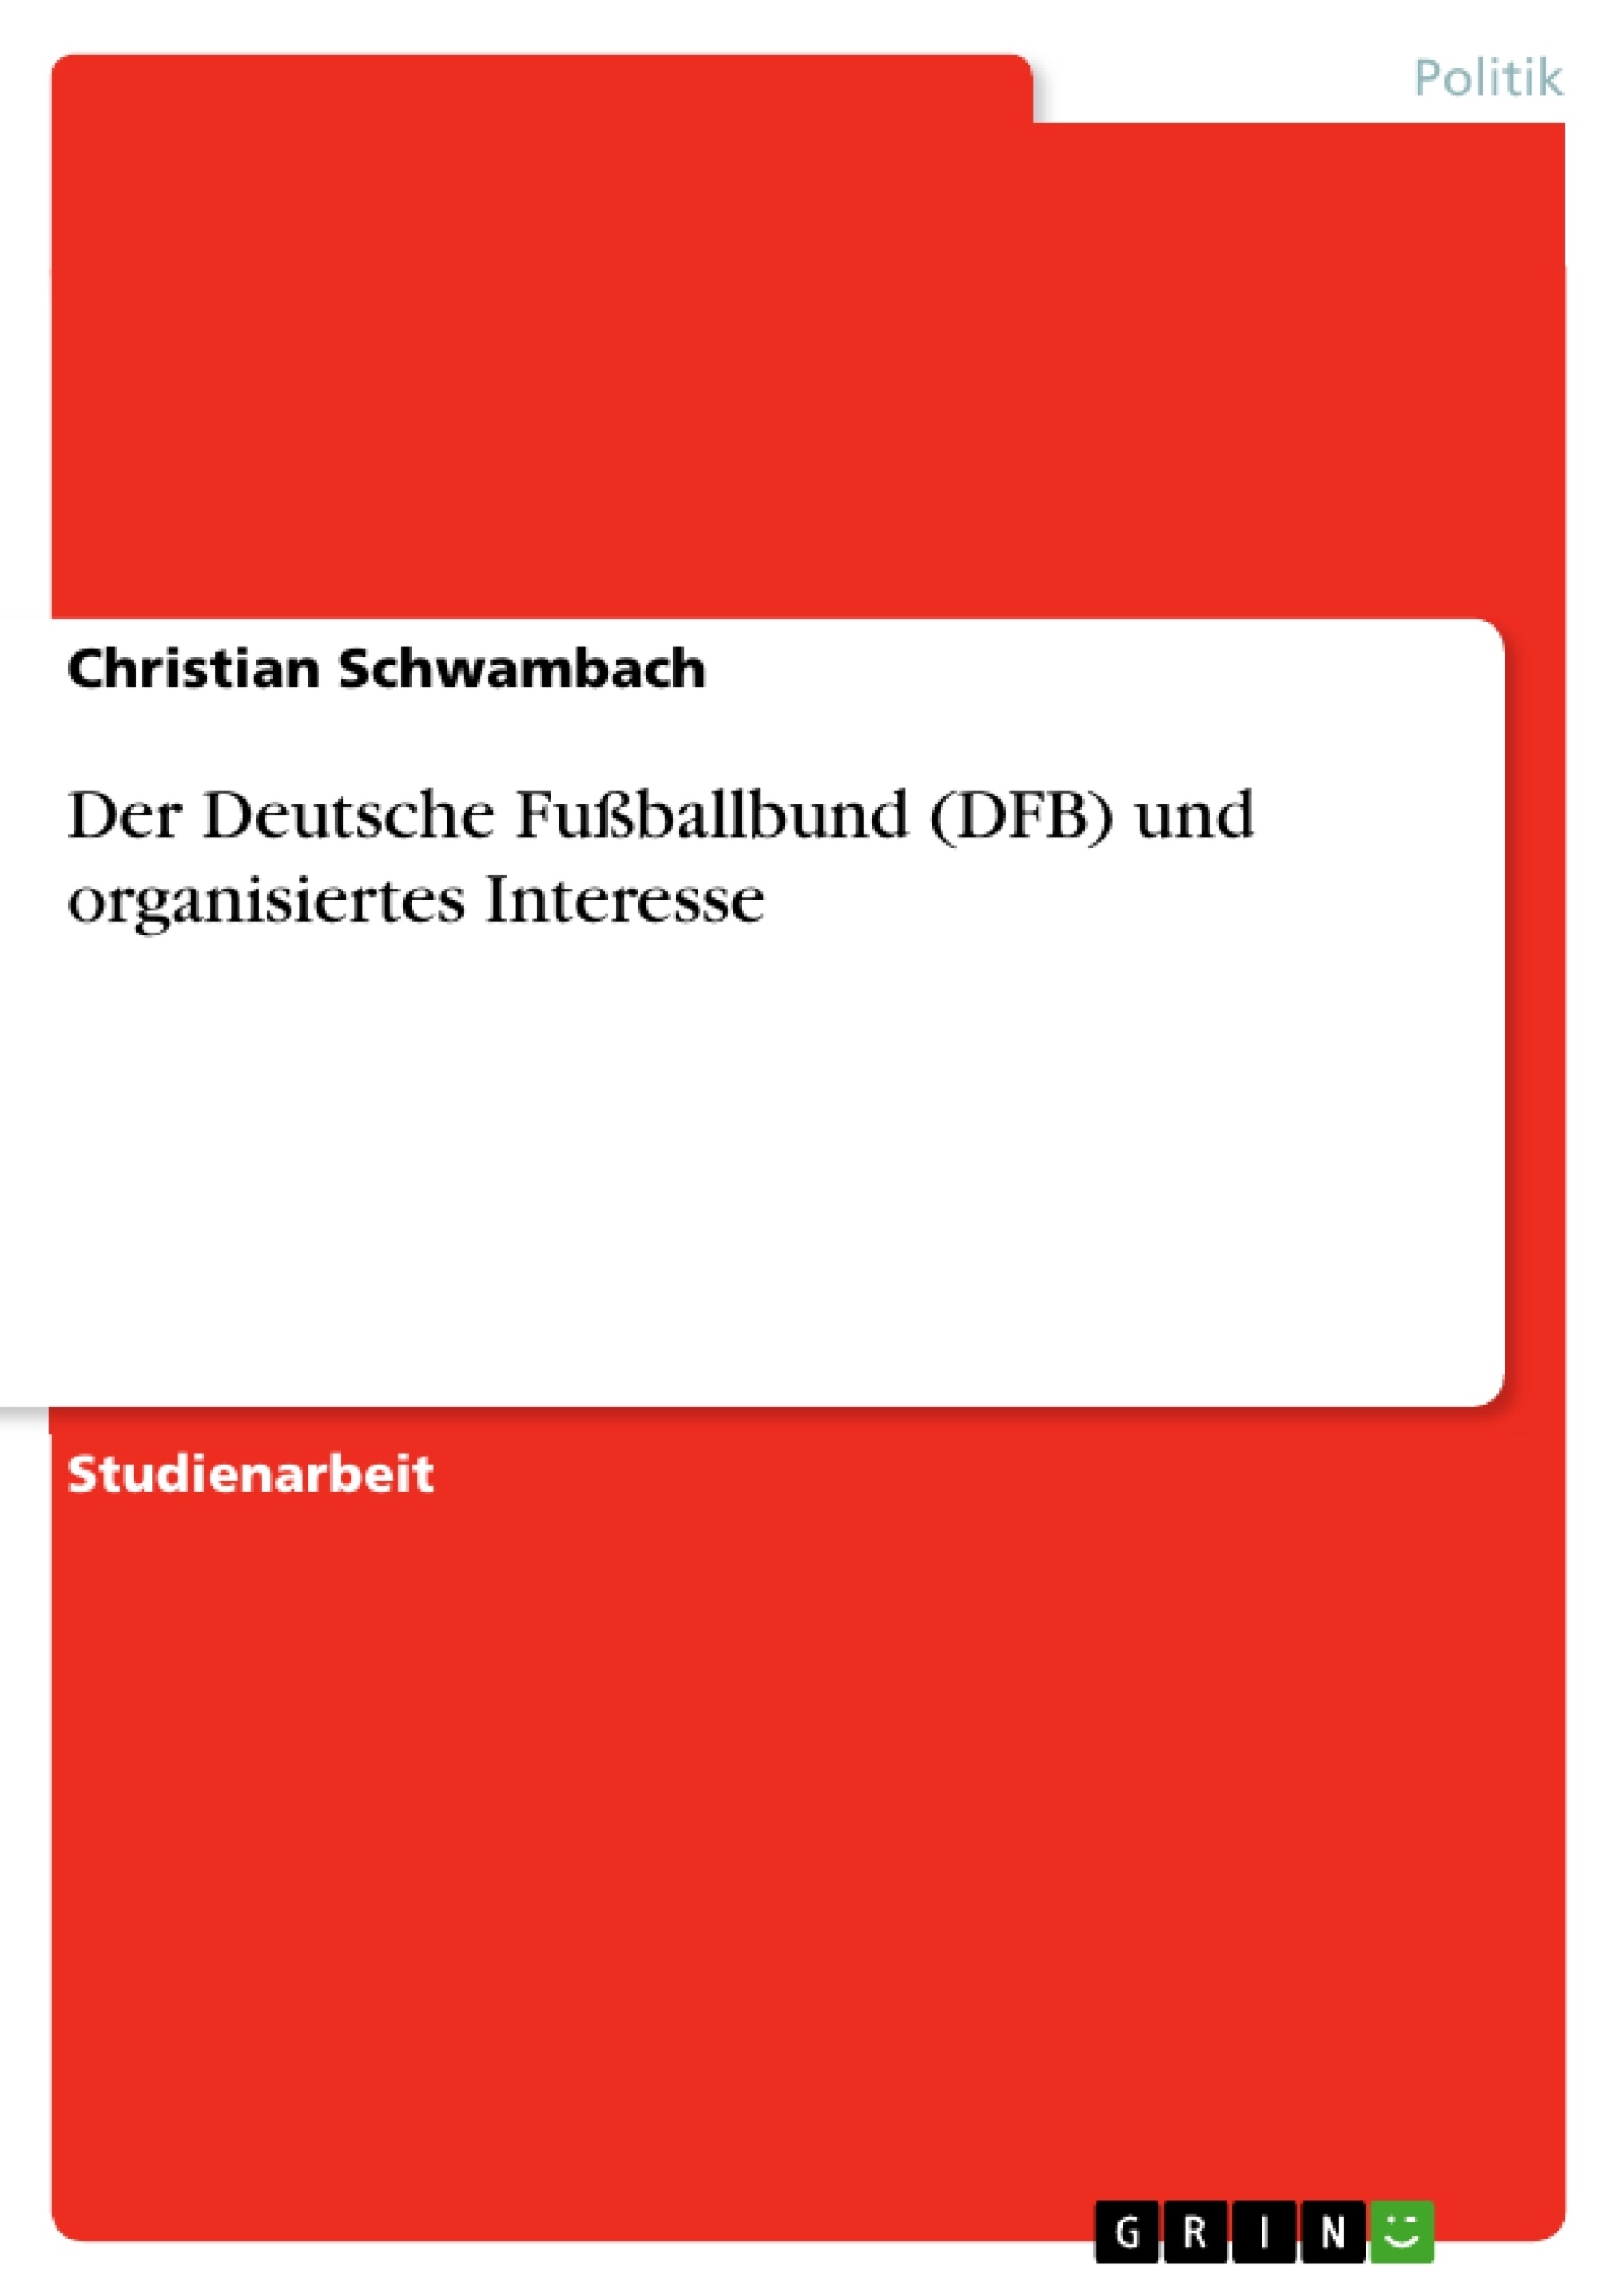 Title: Der Deutsche Fußballbund (DFB) und organisiertes Interesse